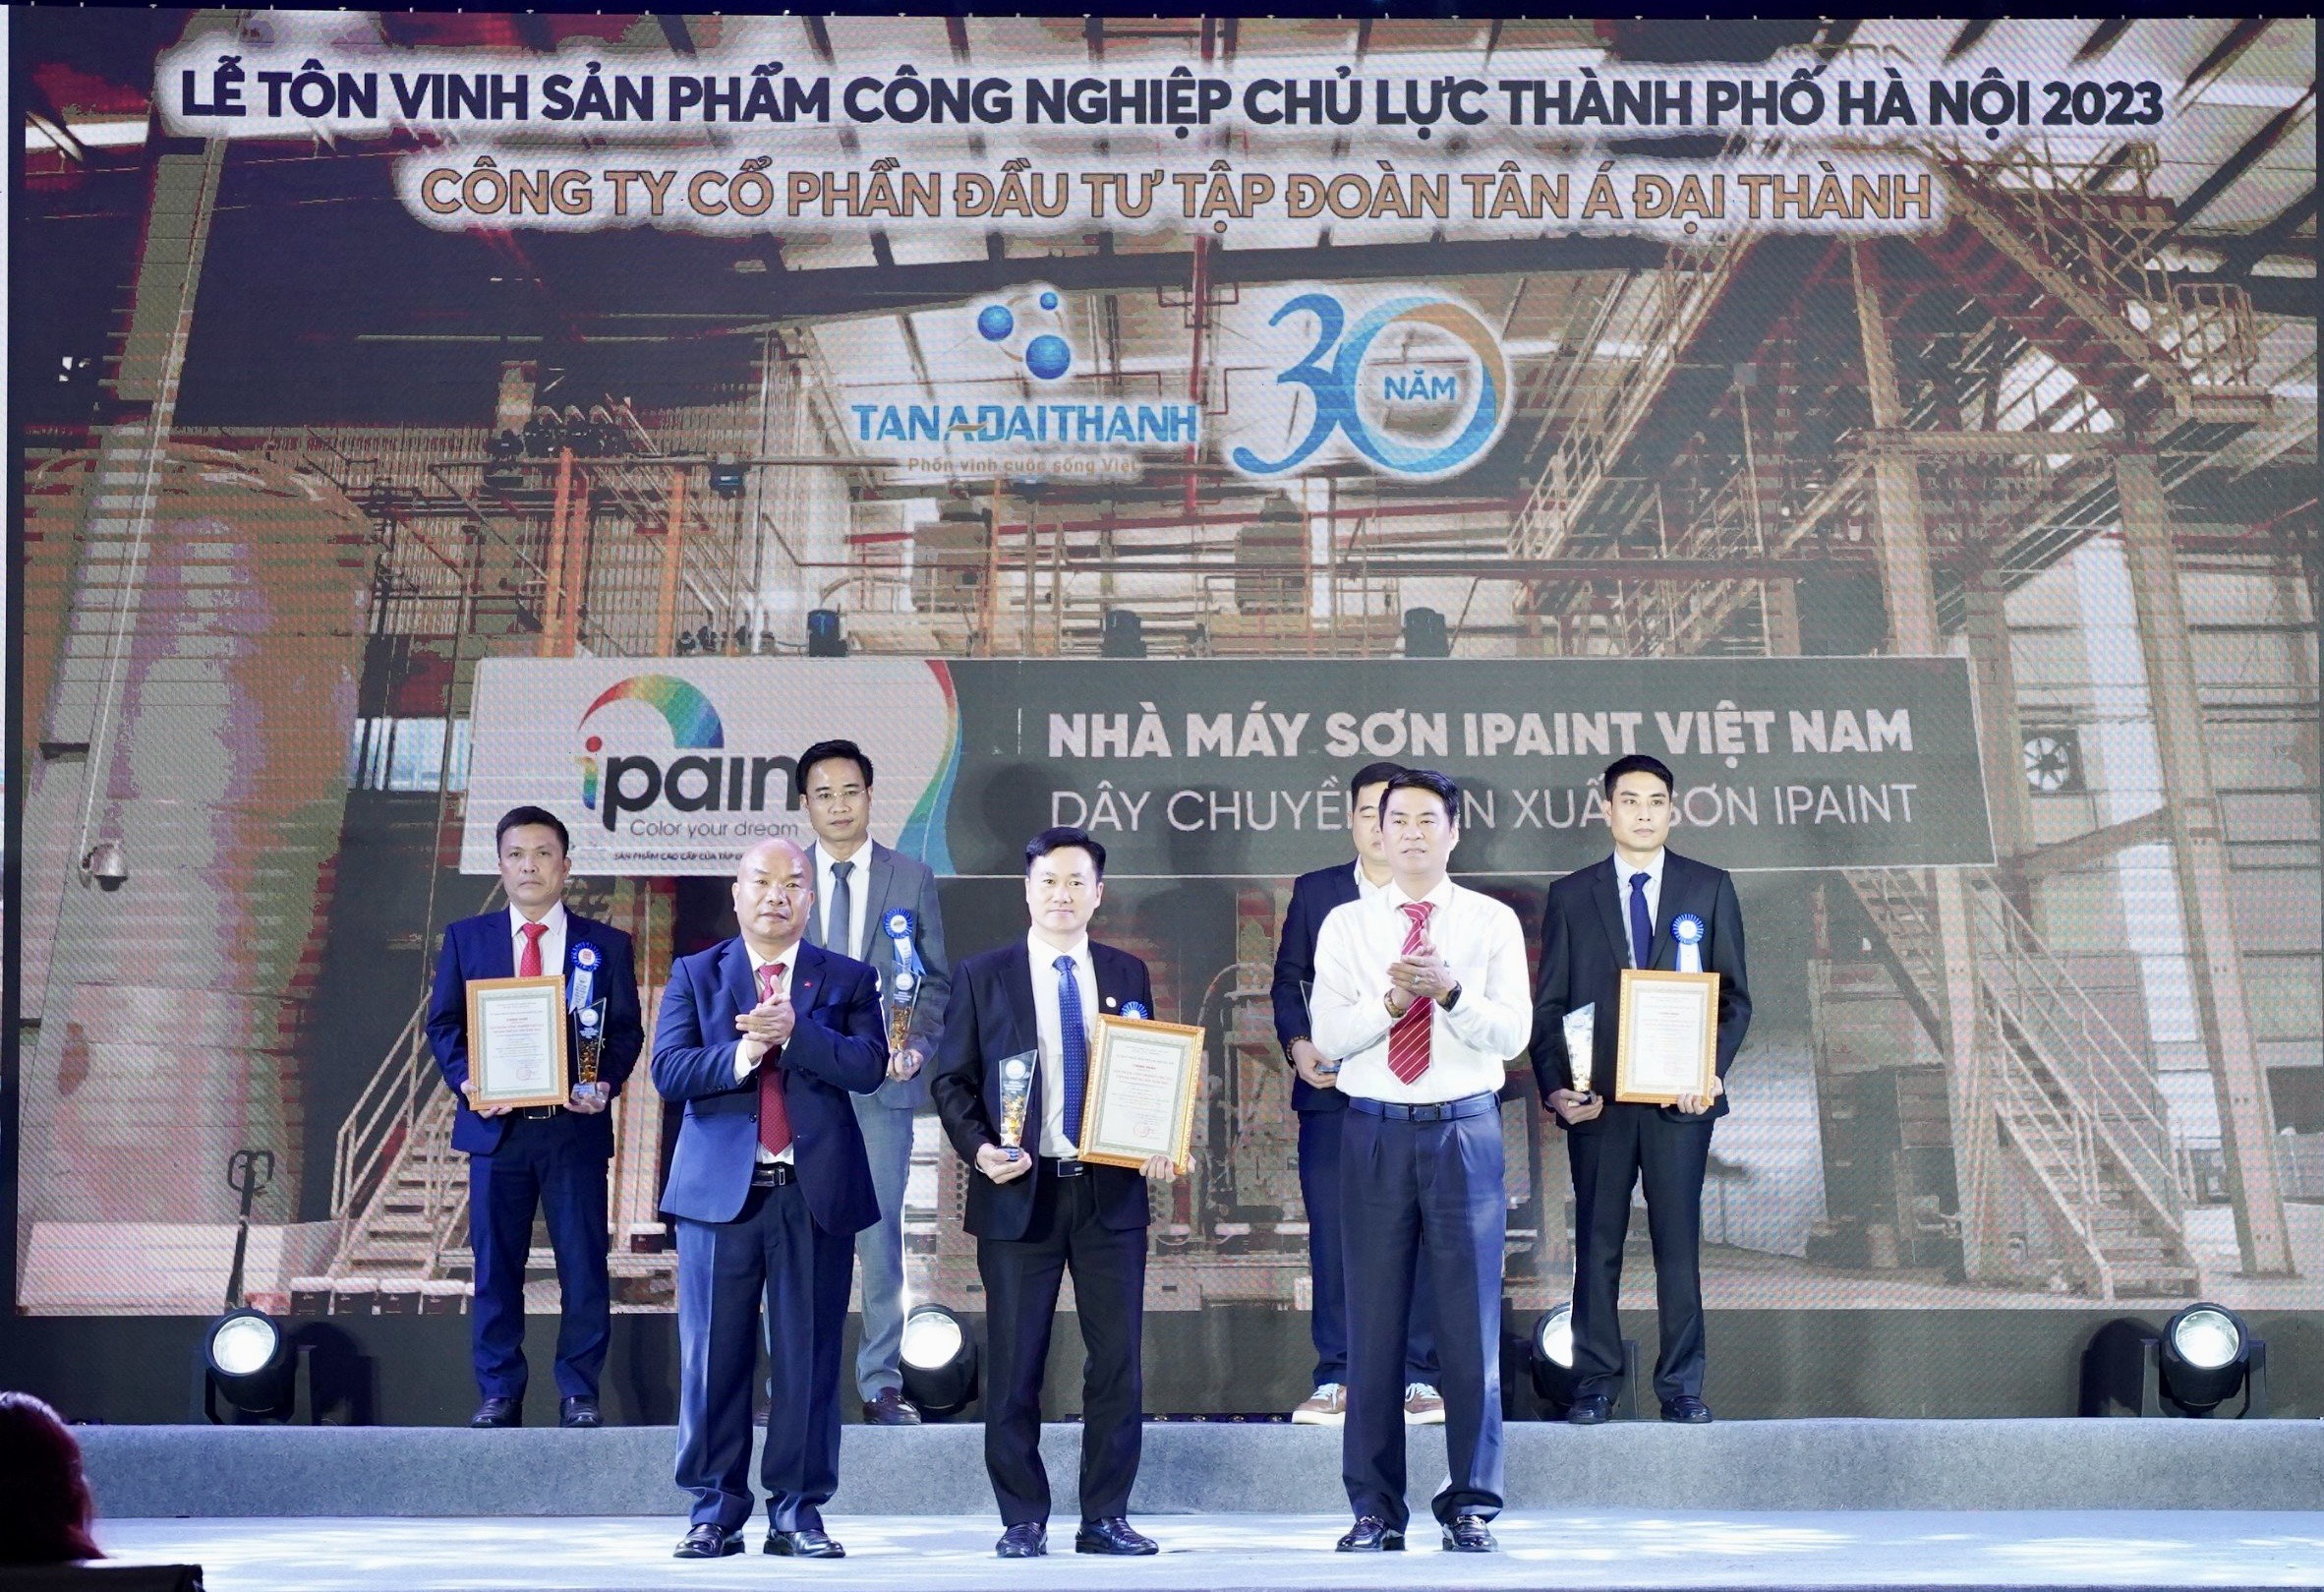 Sơn IPAINT của Tập đoàn Tân Á Đại Thành nhận danh hiệu Sản phẩm công nghiệp chủ lực của TP.Hà Nội năm 2023